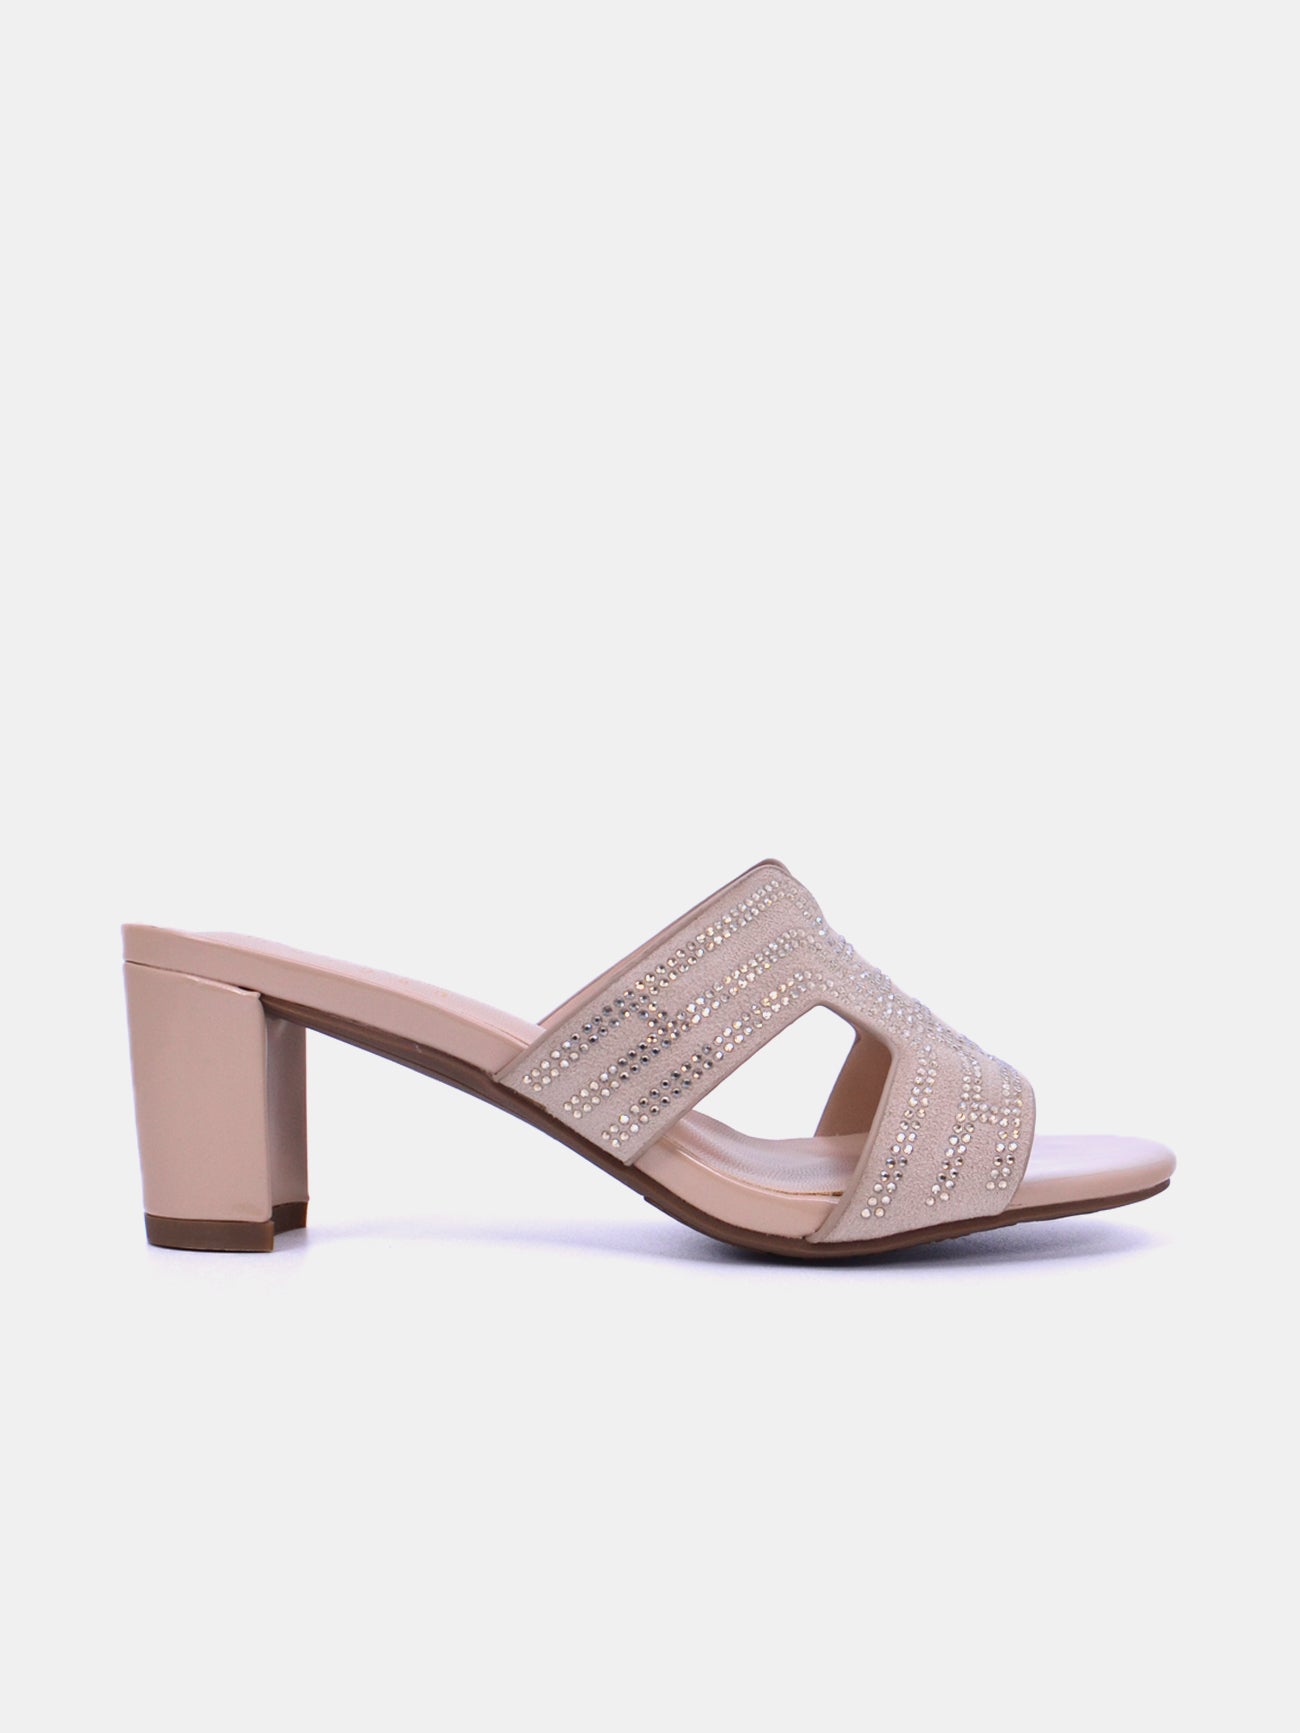 Michelle Morgan 314RJ19A Women's Heeled Sandals #color_Beige